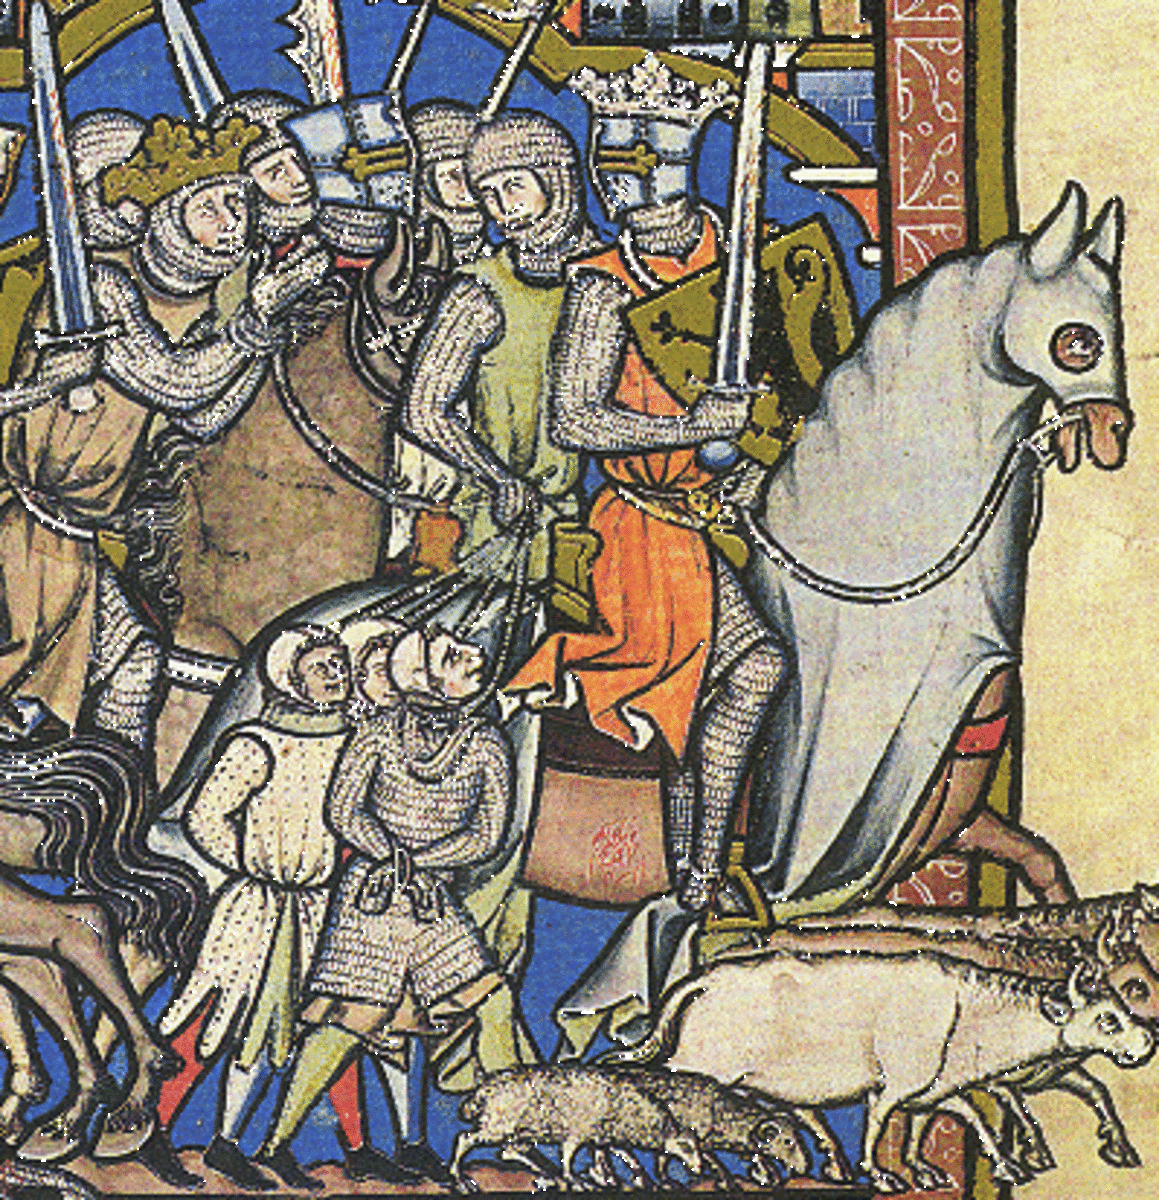   Middeleeuwse ridders droegen maliënkolders als onderdeel van hun wapenrusting tijdens de midden tot late middeleeuwen, zoals hier te zien is in de Maciejowski-bijbel.